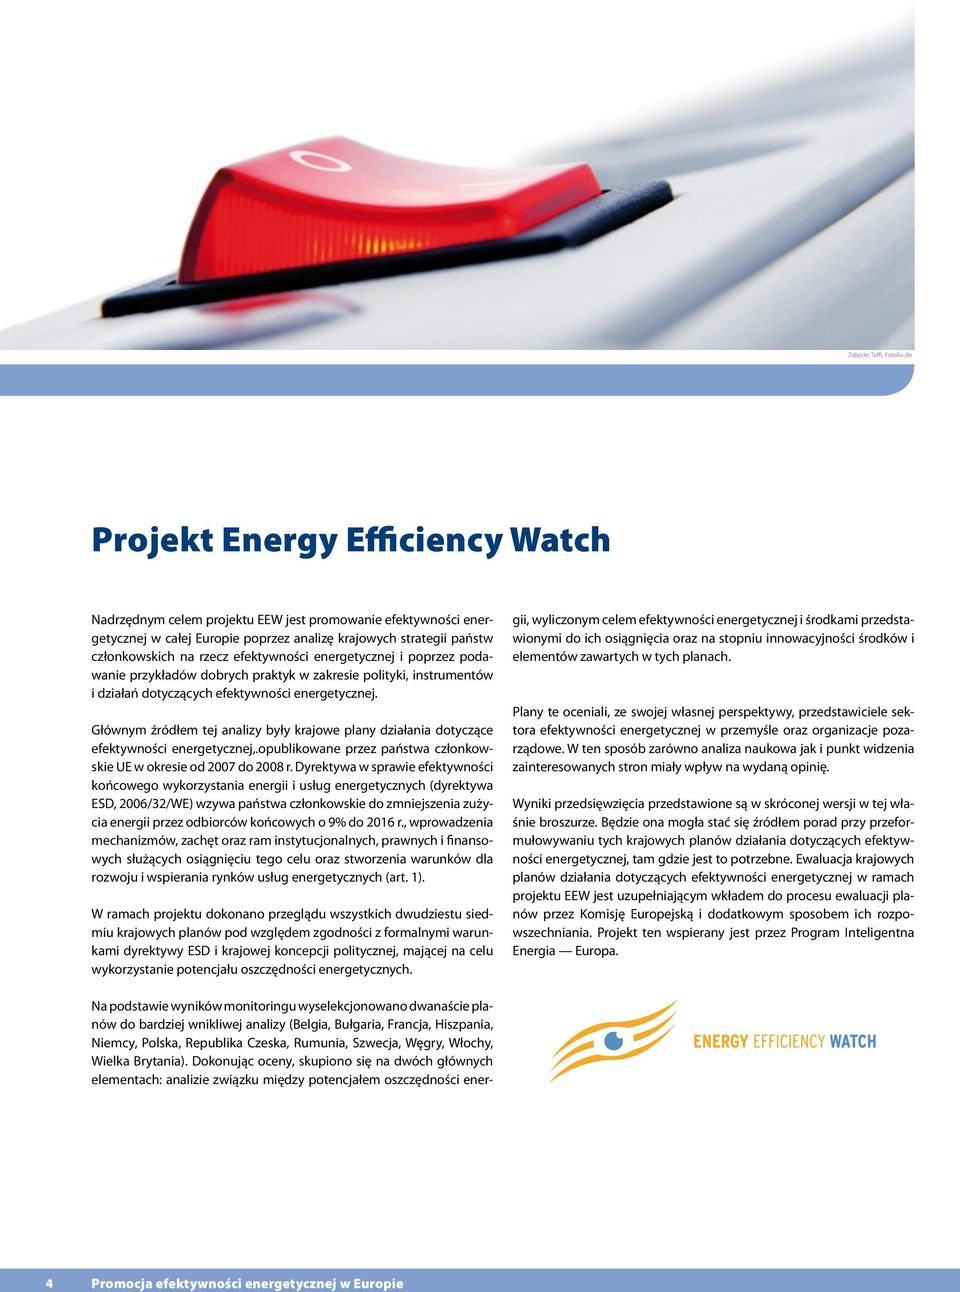 efektywności energetycznej i poprzez podawanie przykładów dobrych praktyk w zakresie polityki, instrumentów i działań dotyczących efektywności energetycznej.